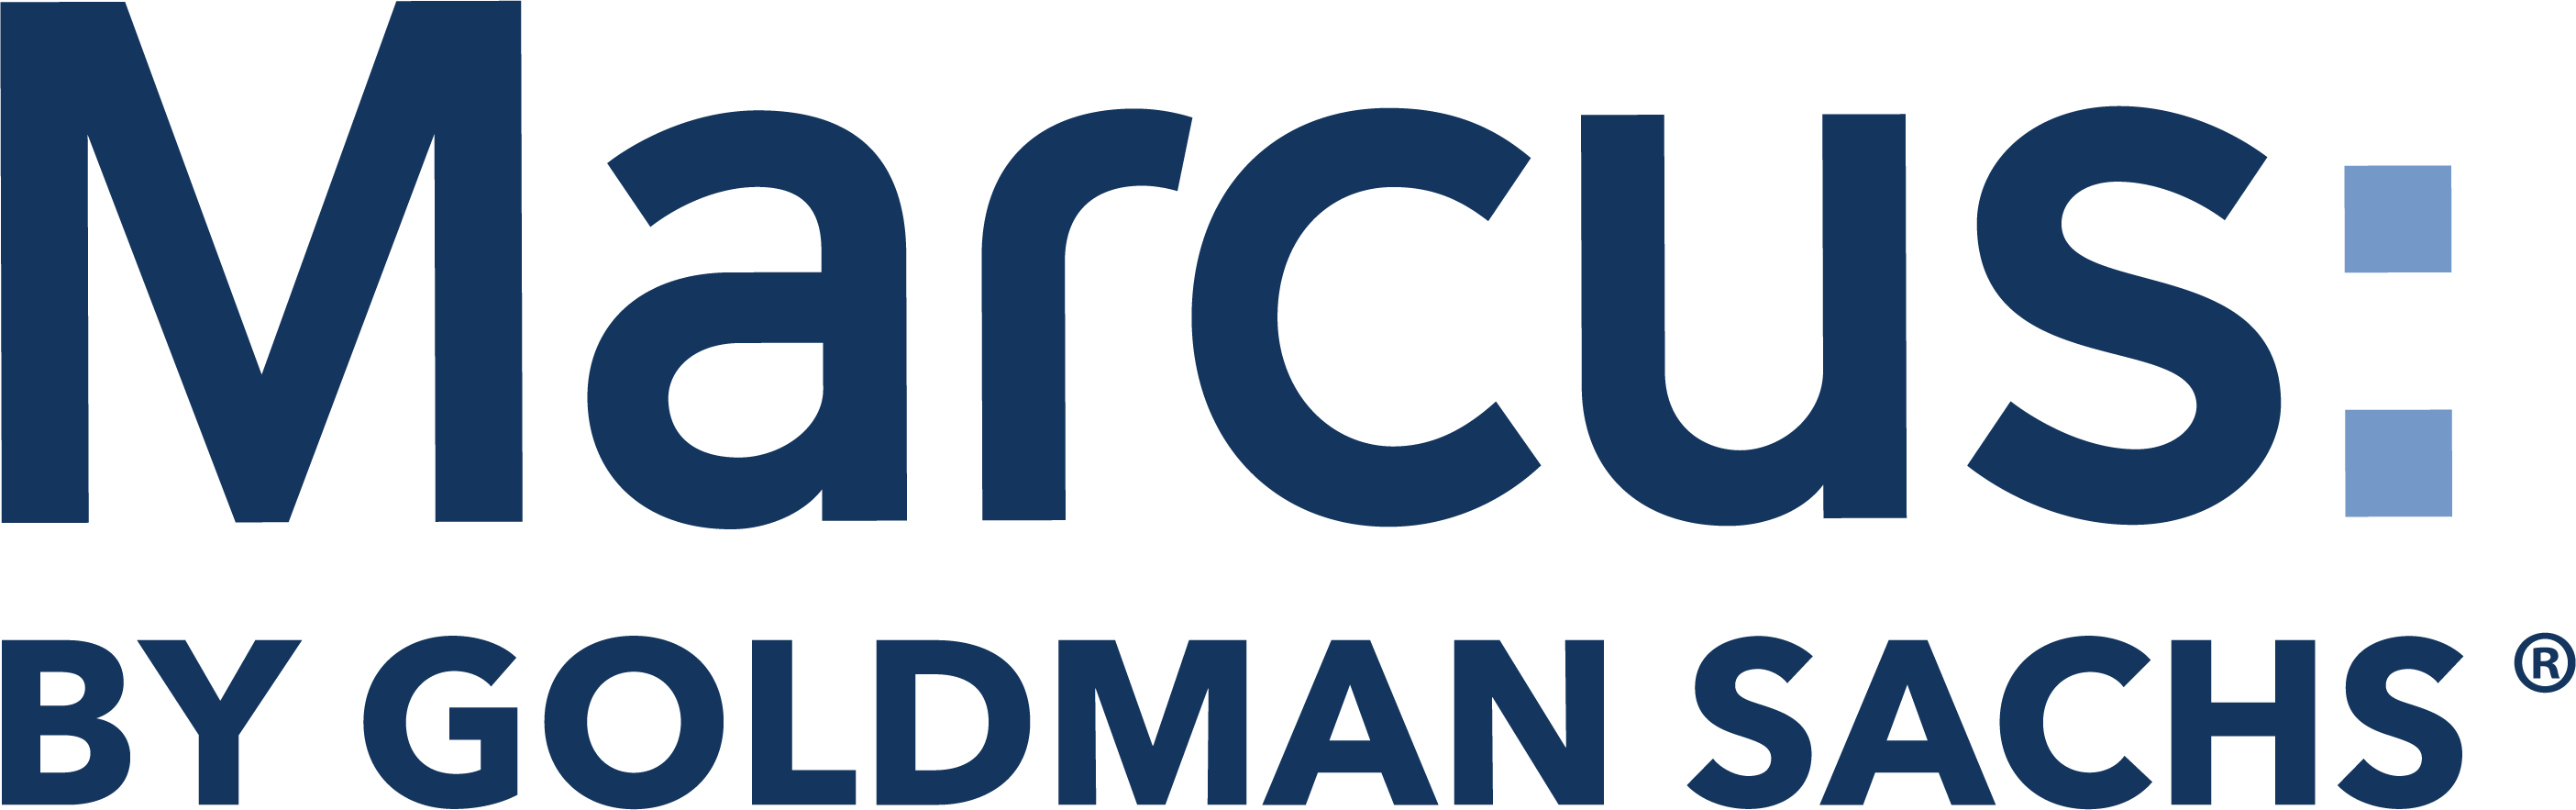 Marcus Logo